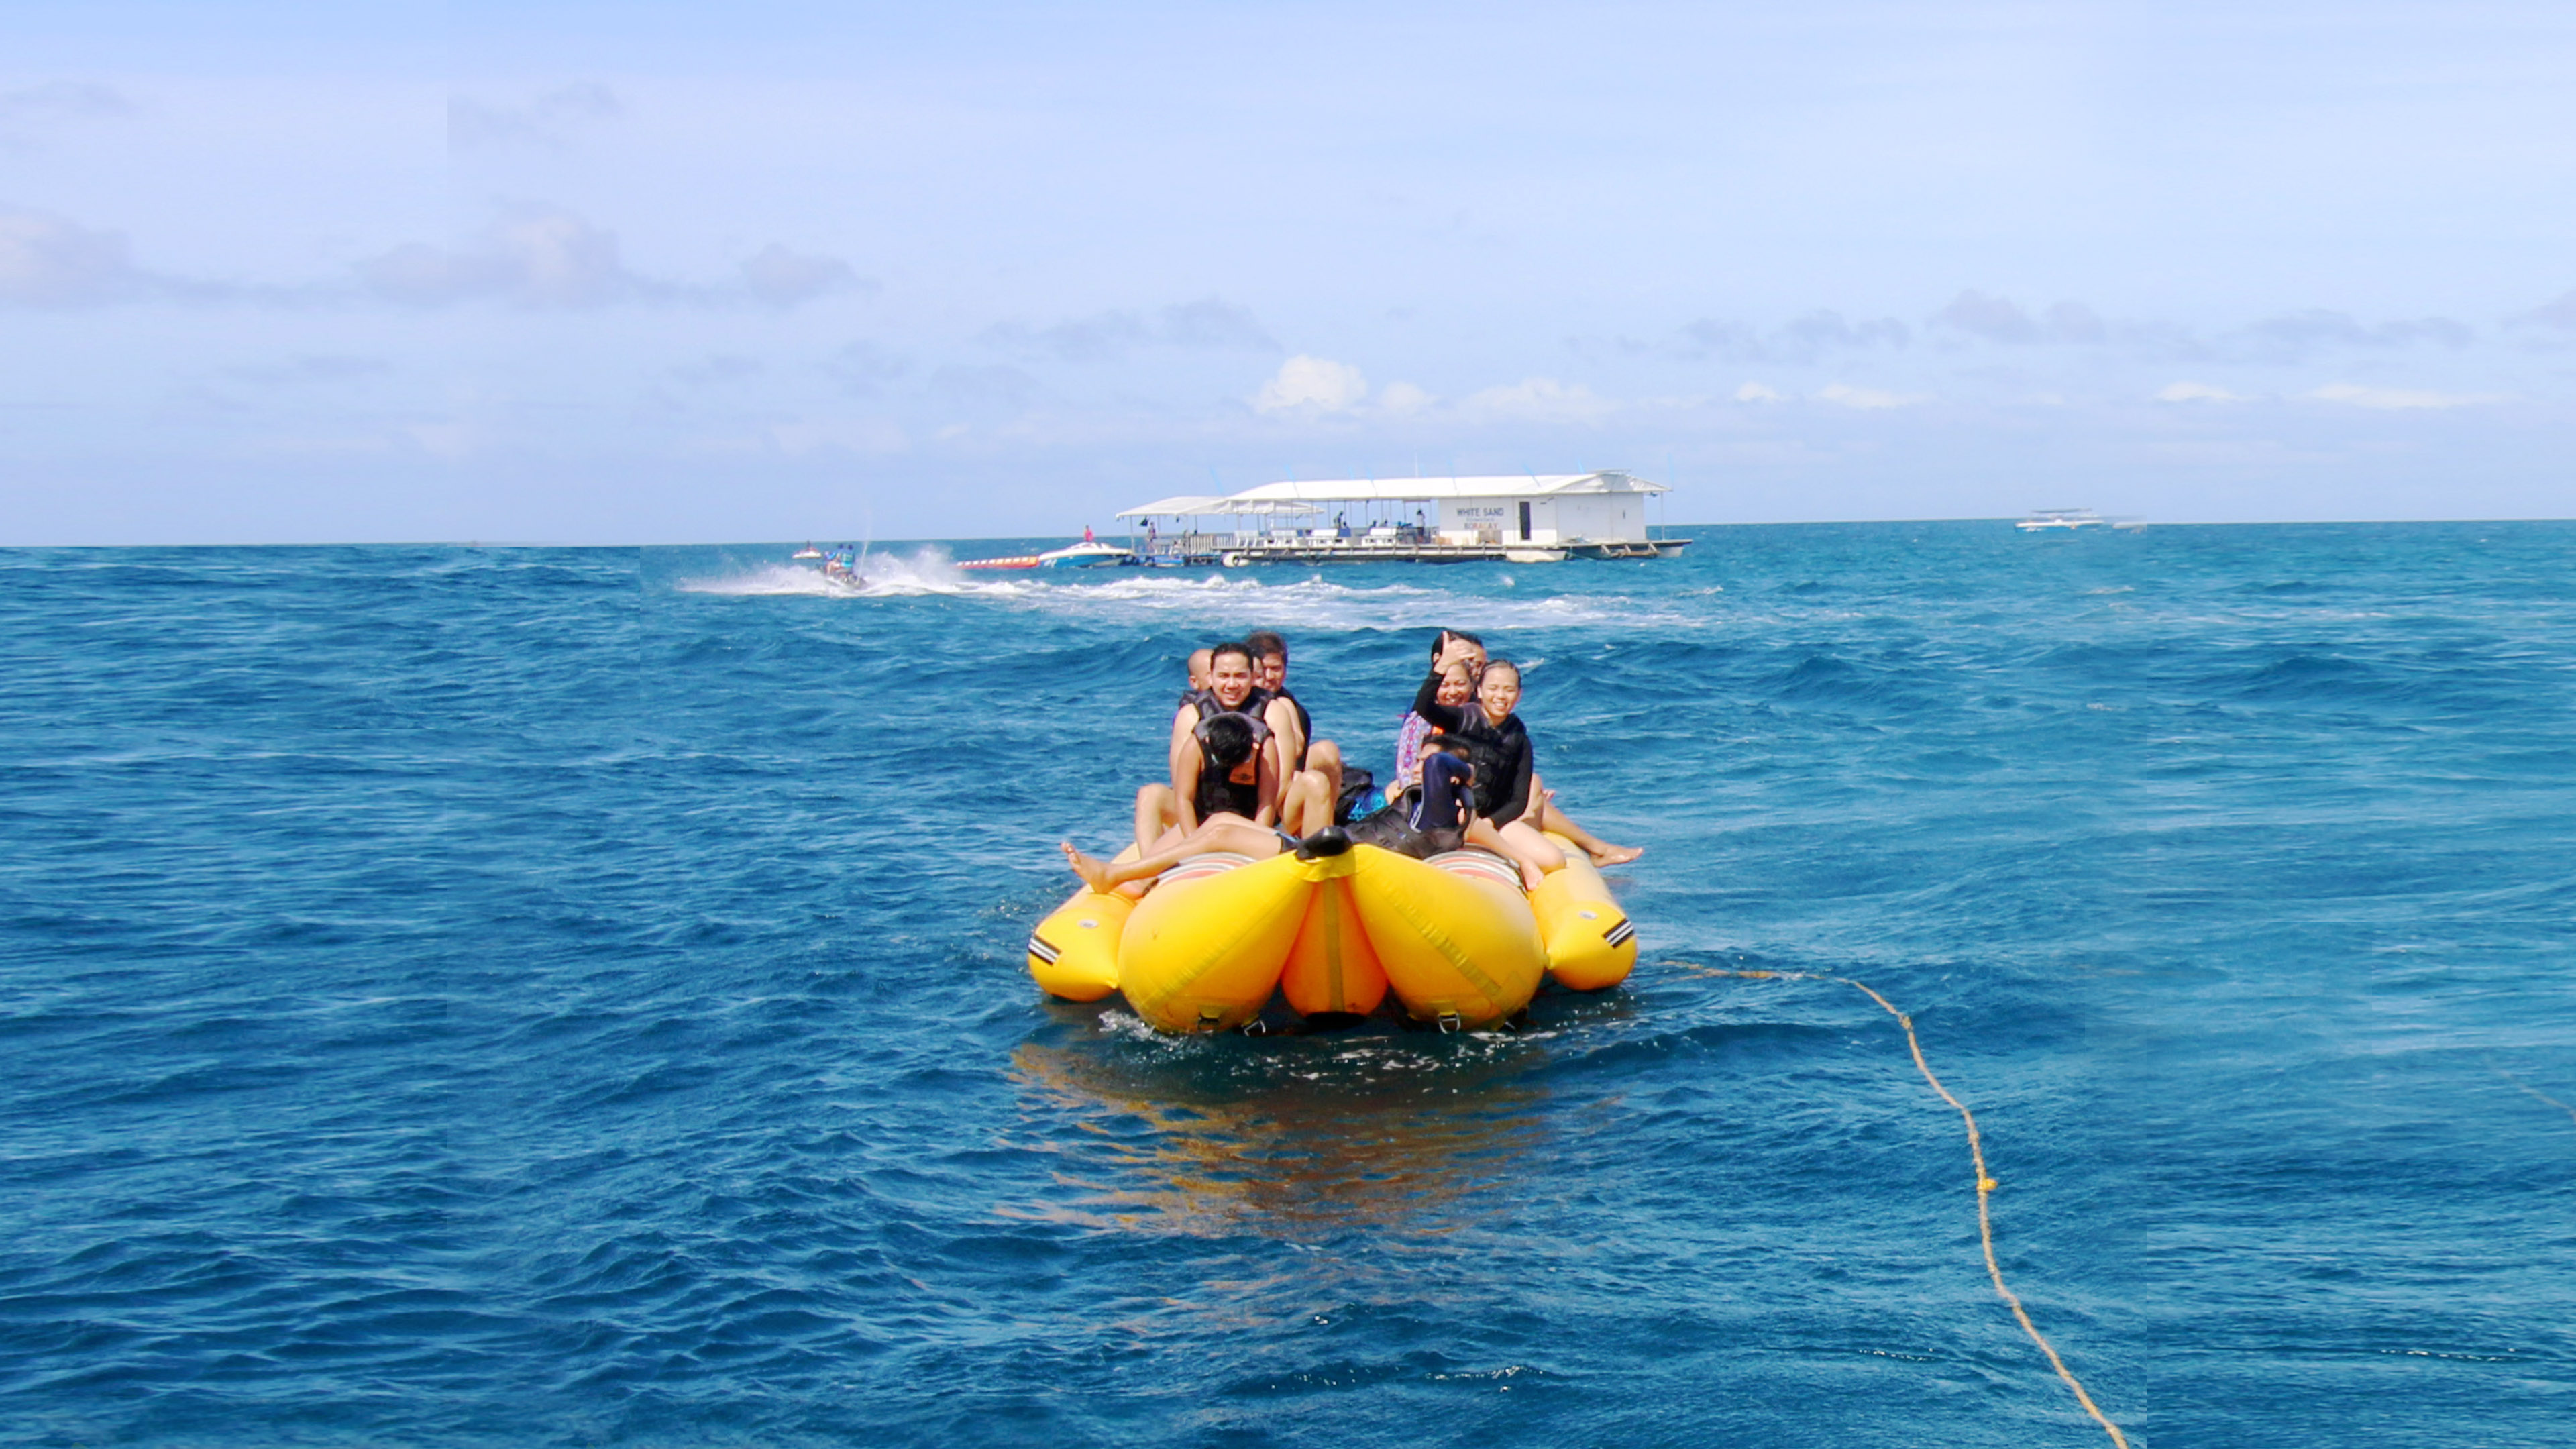 Tourists enjoying the Banana Boat Adventure in Boracay